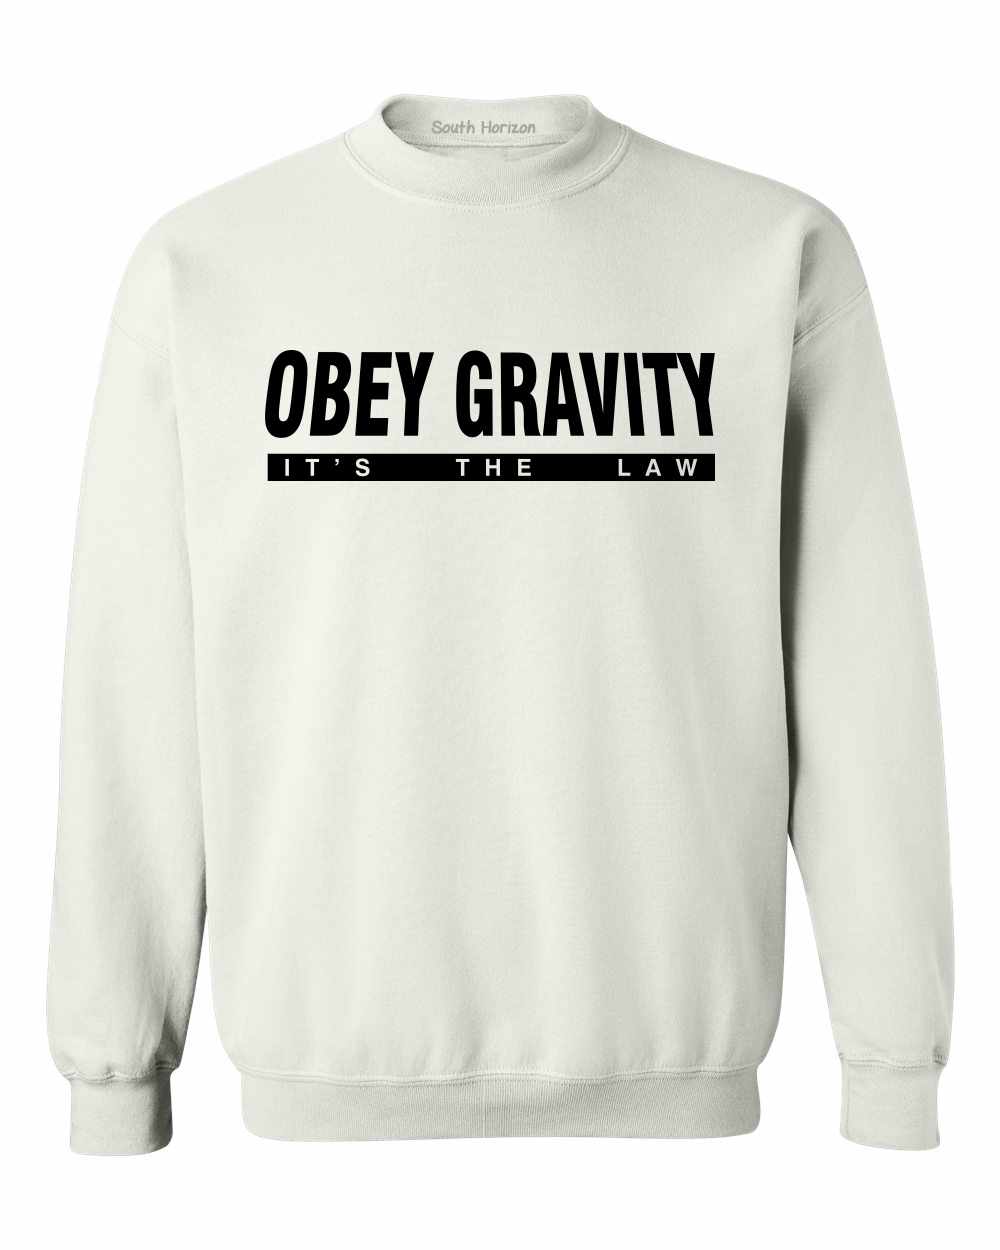 OBEY GRAVITY, It's the Law on SweatShirt (#756-11)